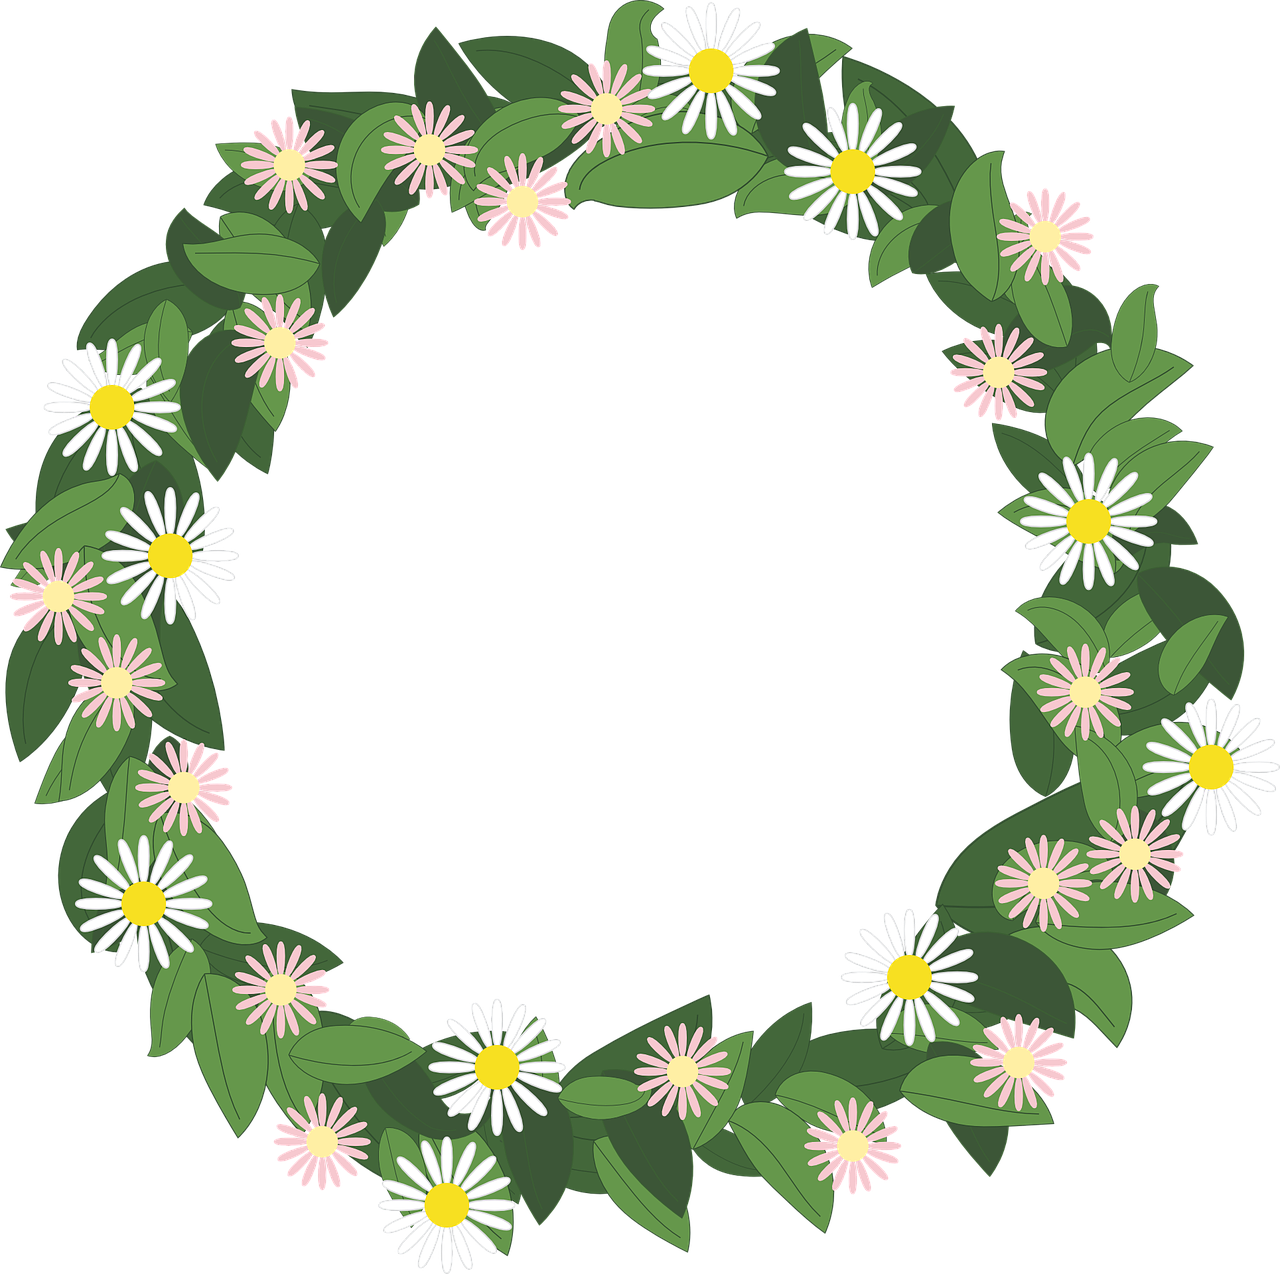 flower wreath rim präskrage free photo